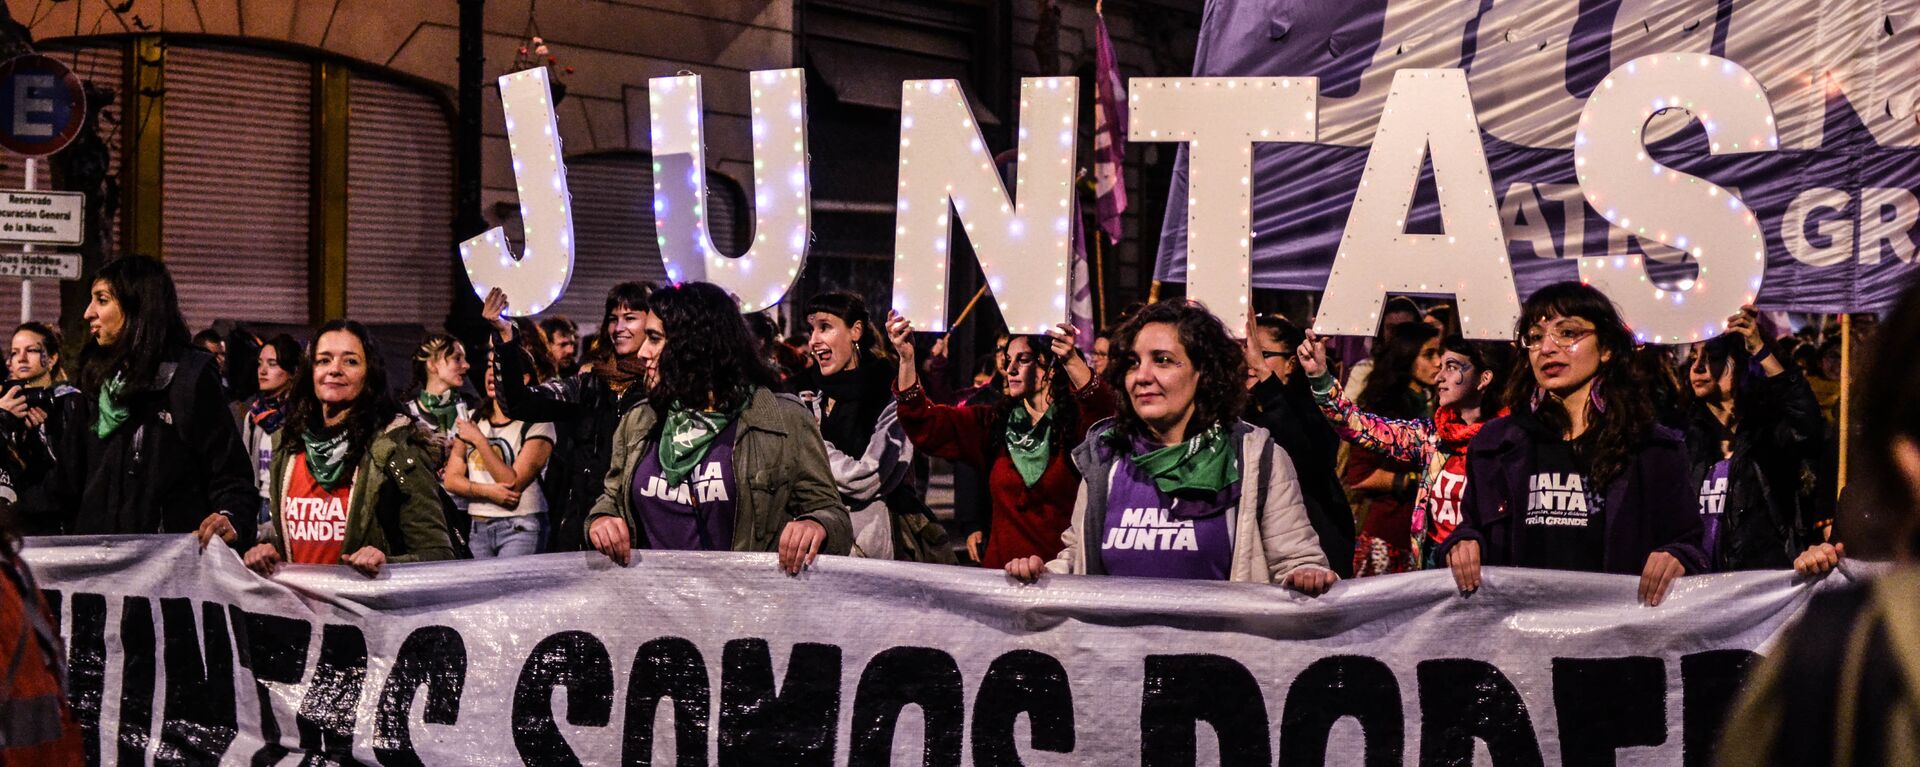 Marcha por los derechos de la mujer en Argentina - Sputnik Mundo, 1920, 03.03.2021